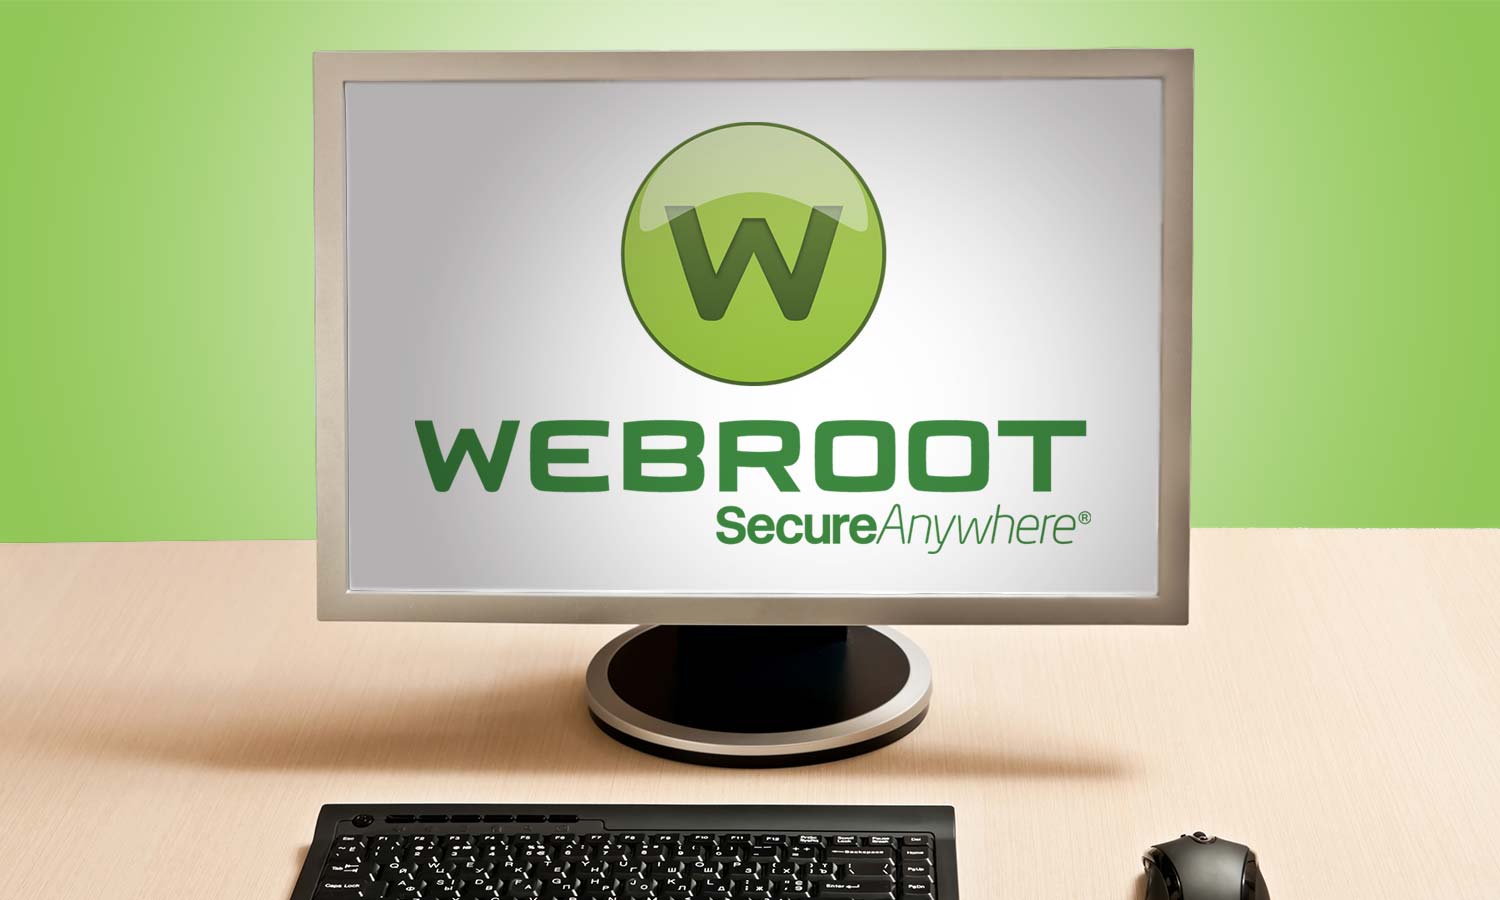 webroot download windows 10